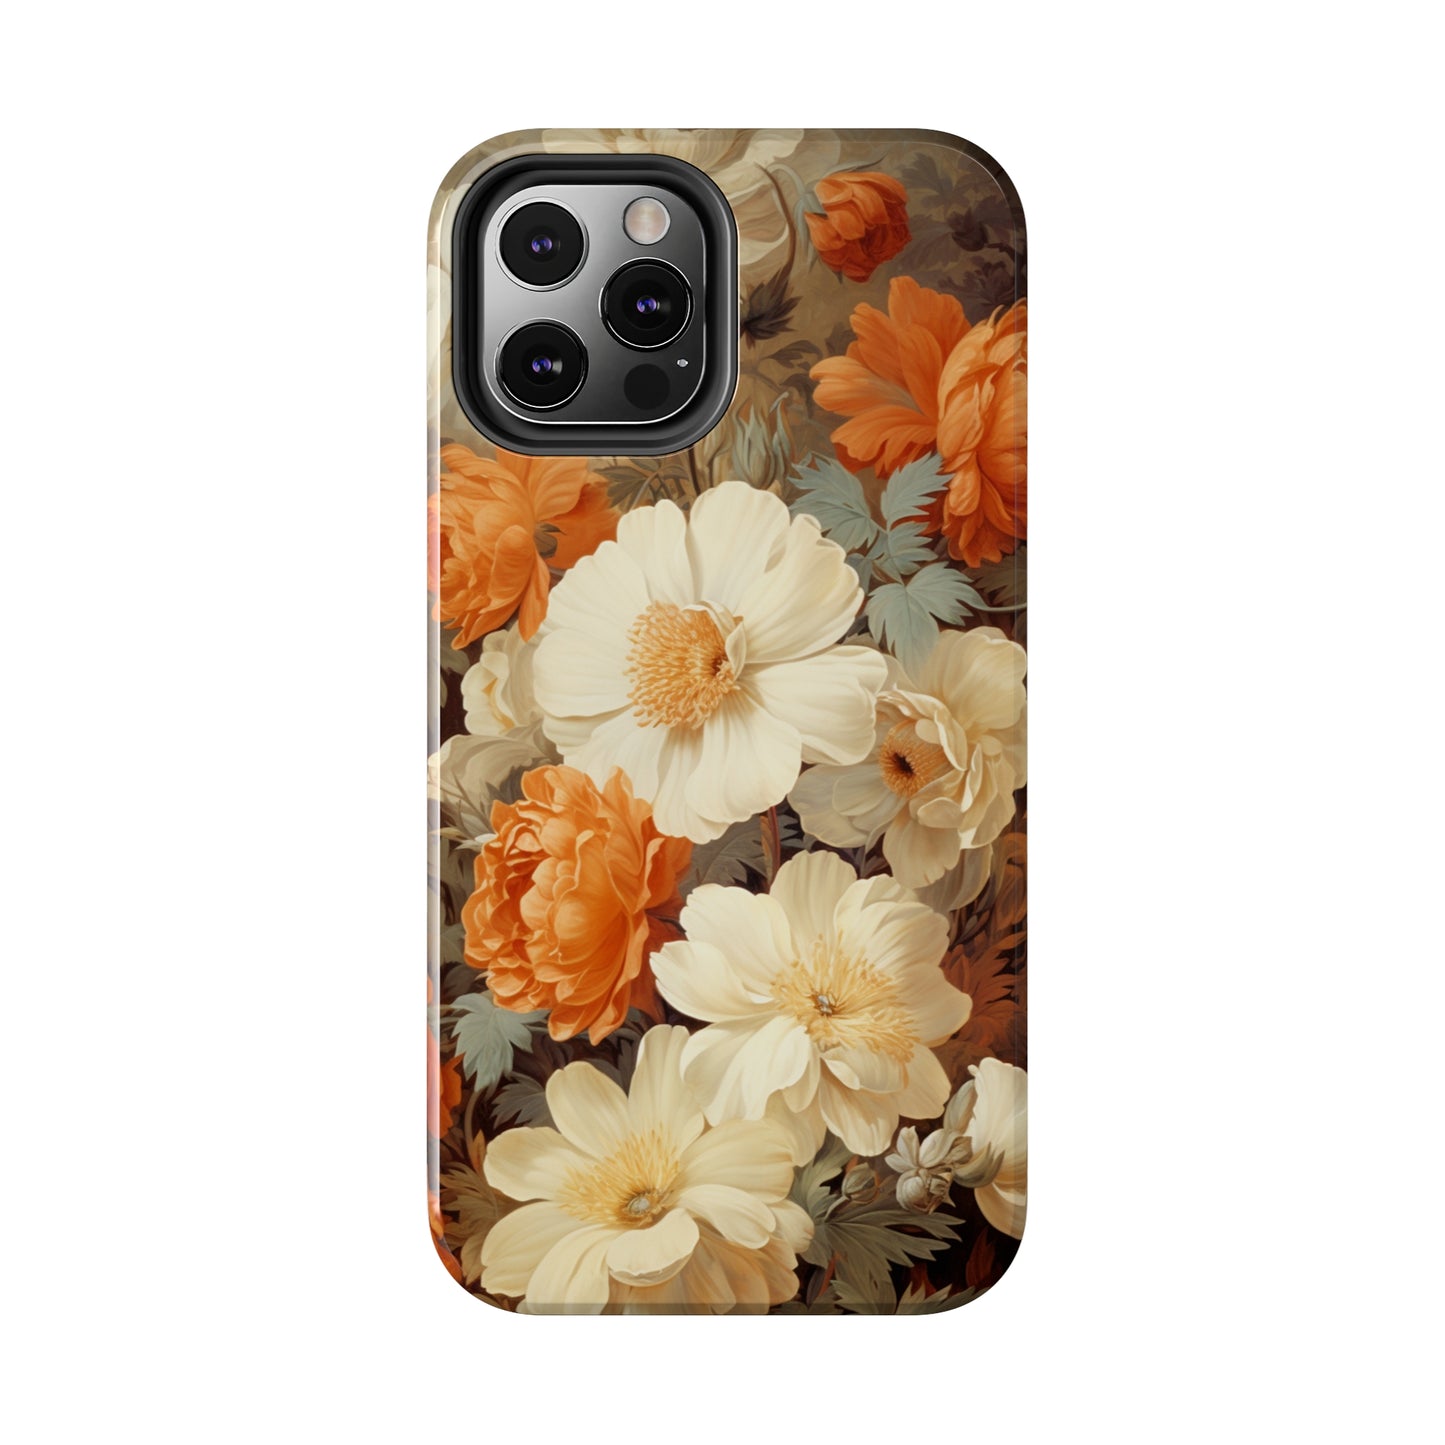 Retro Floral iPhone case